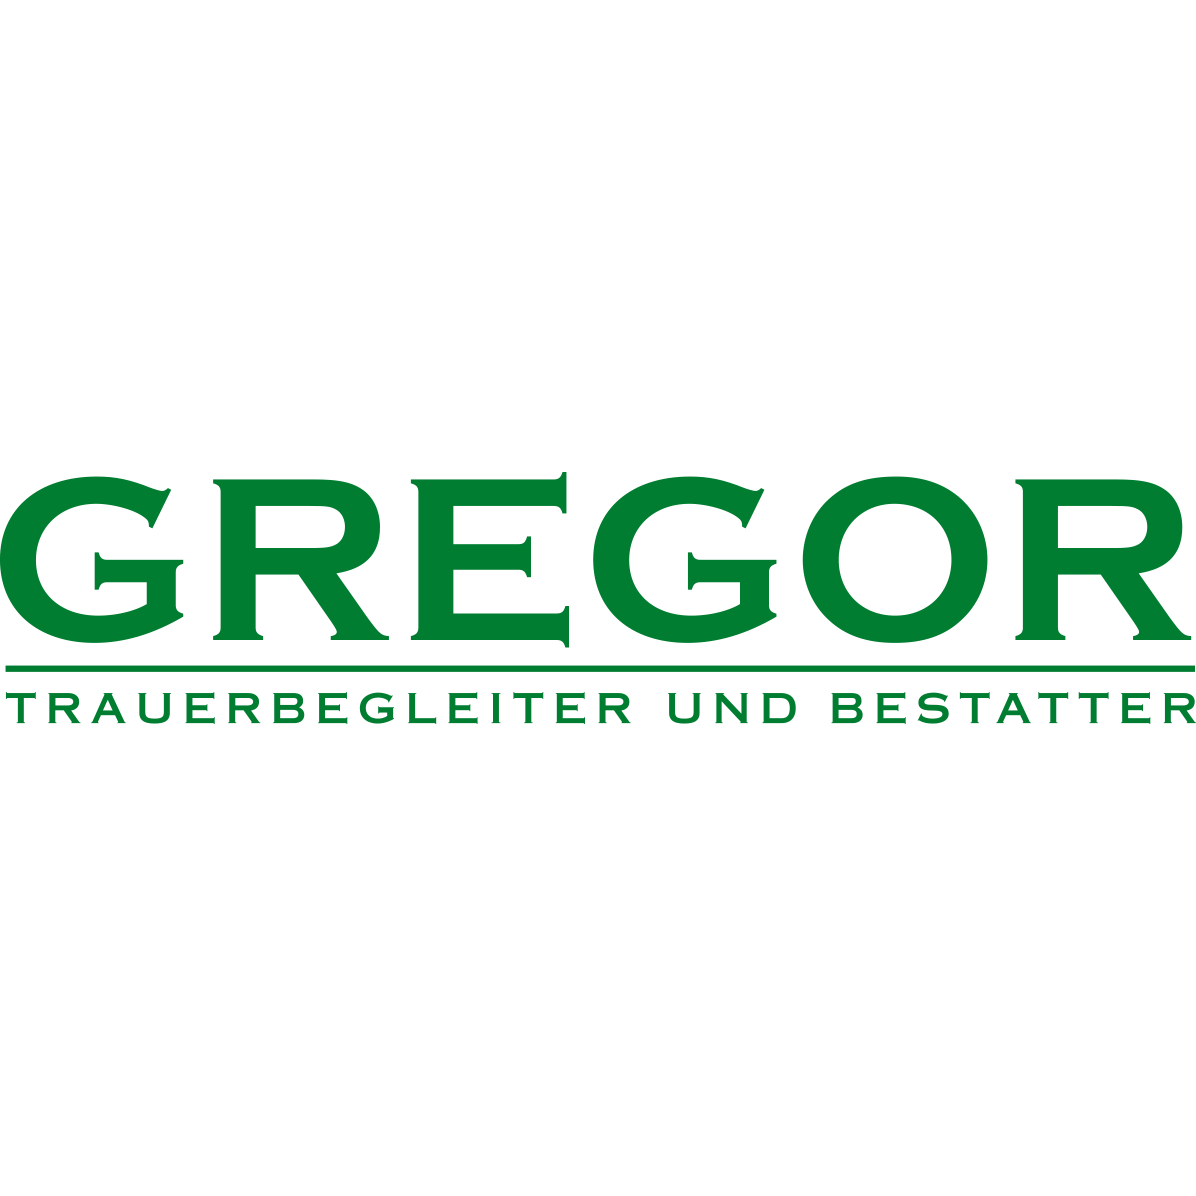 Trauerbegleitung und Bestattungen Jürgen Gregor GmbH in Hirschberg in Hirschberg an der Bergstrasse - Logo